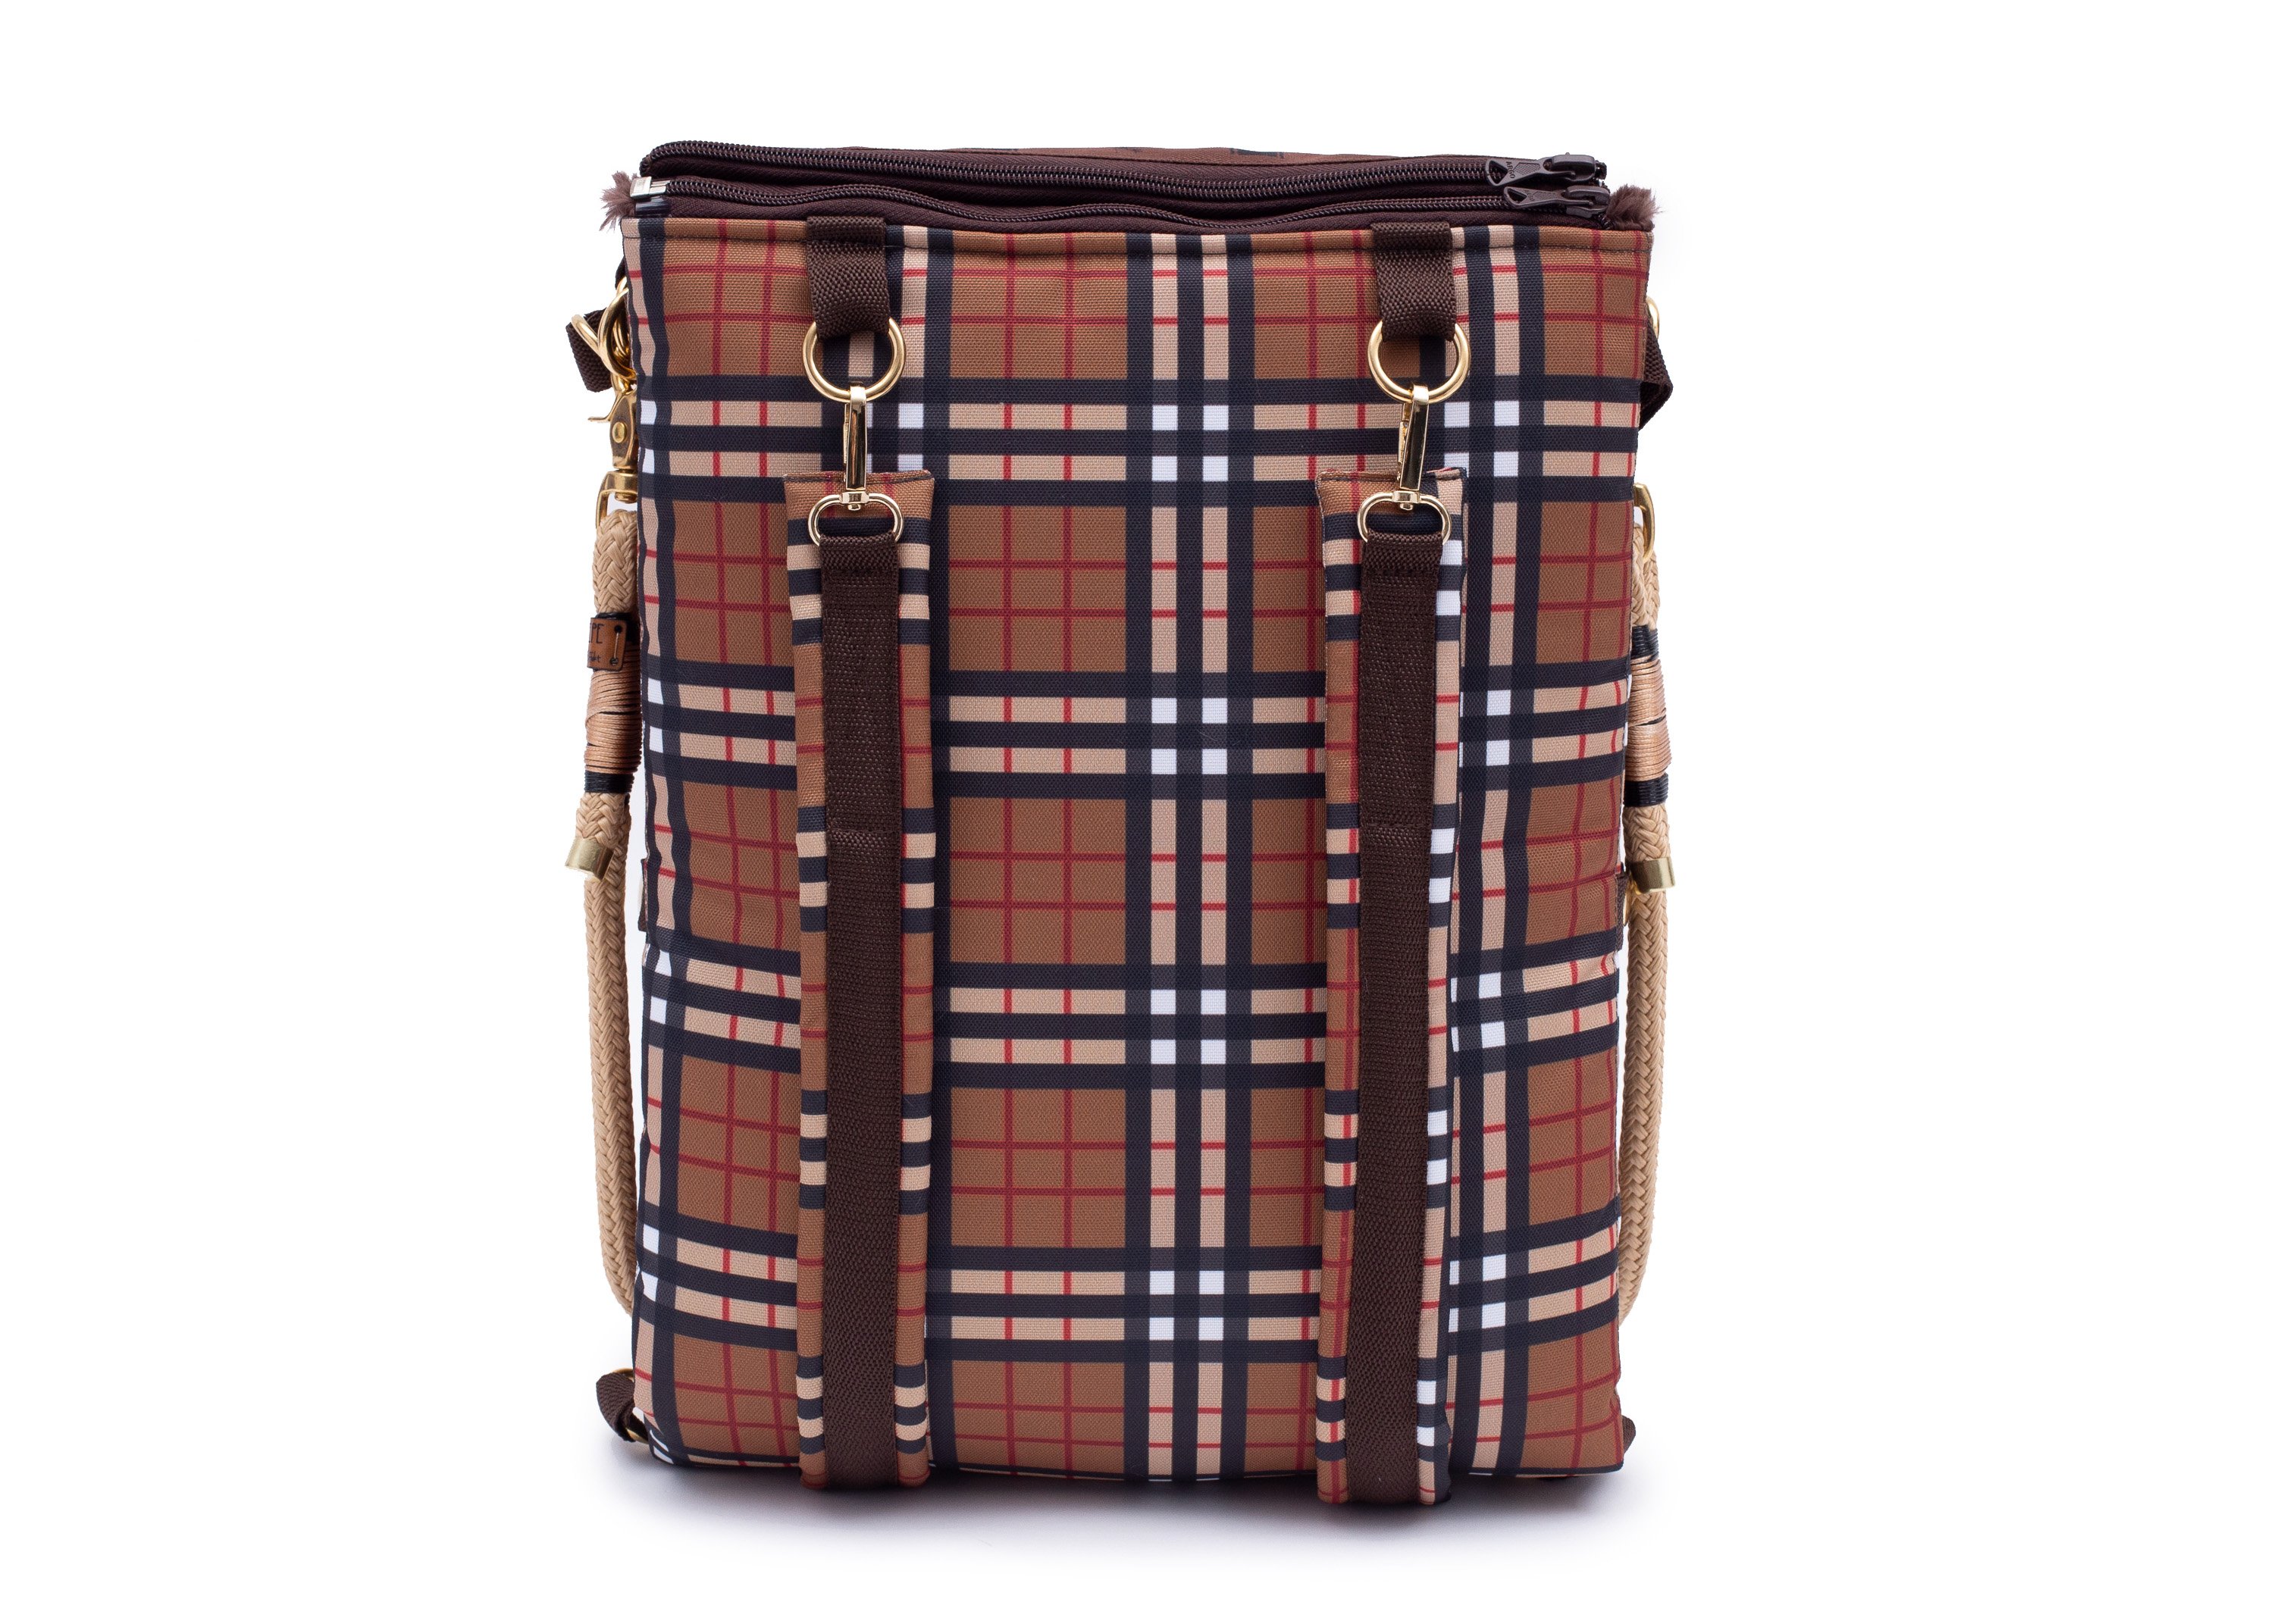 Wau-Backpack Sherlock Backpack-M (80x100cm)